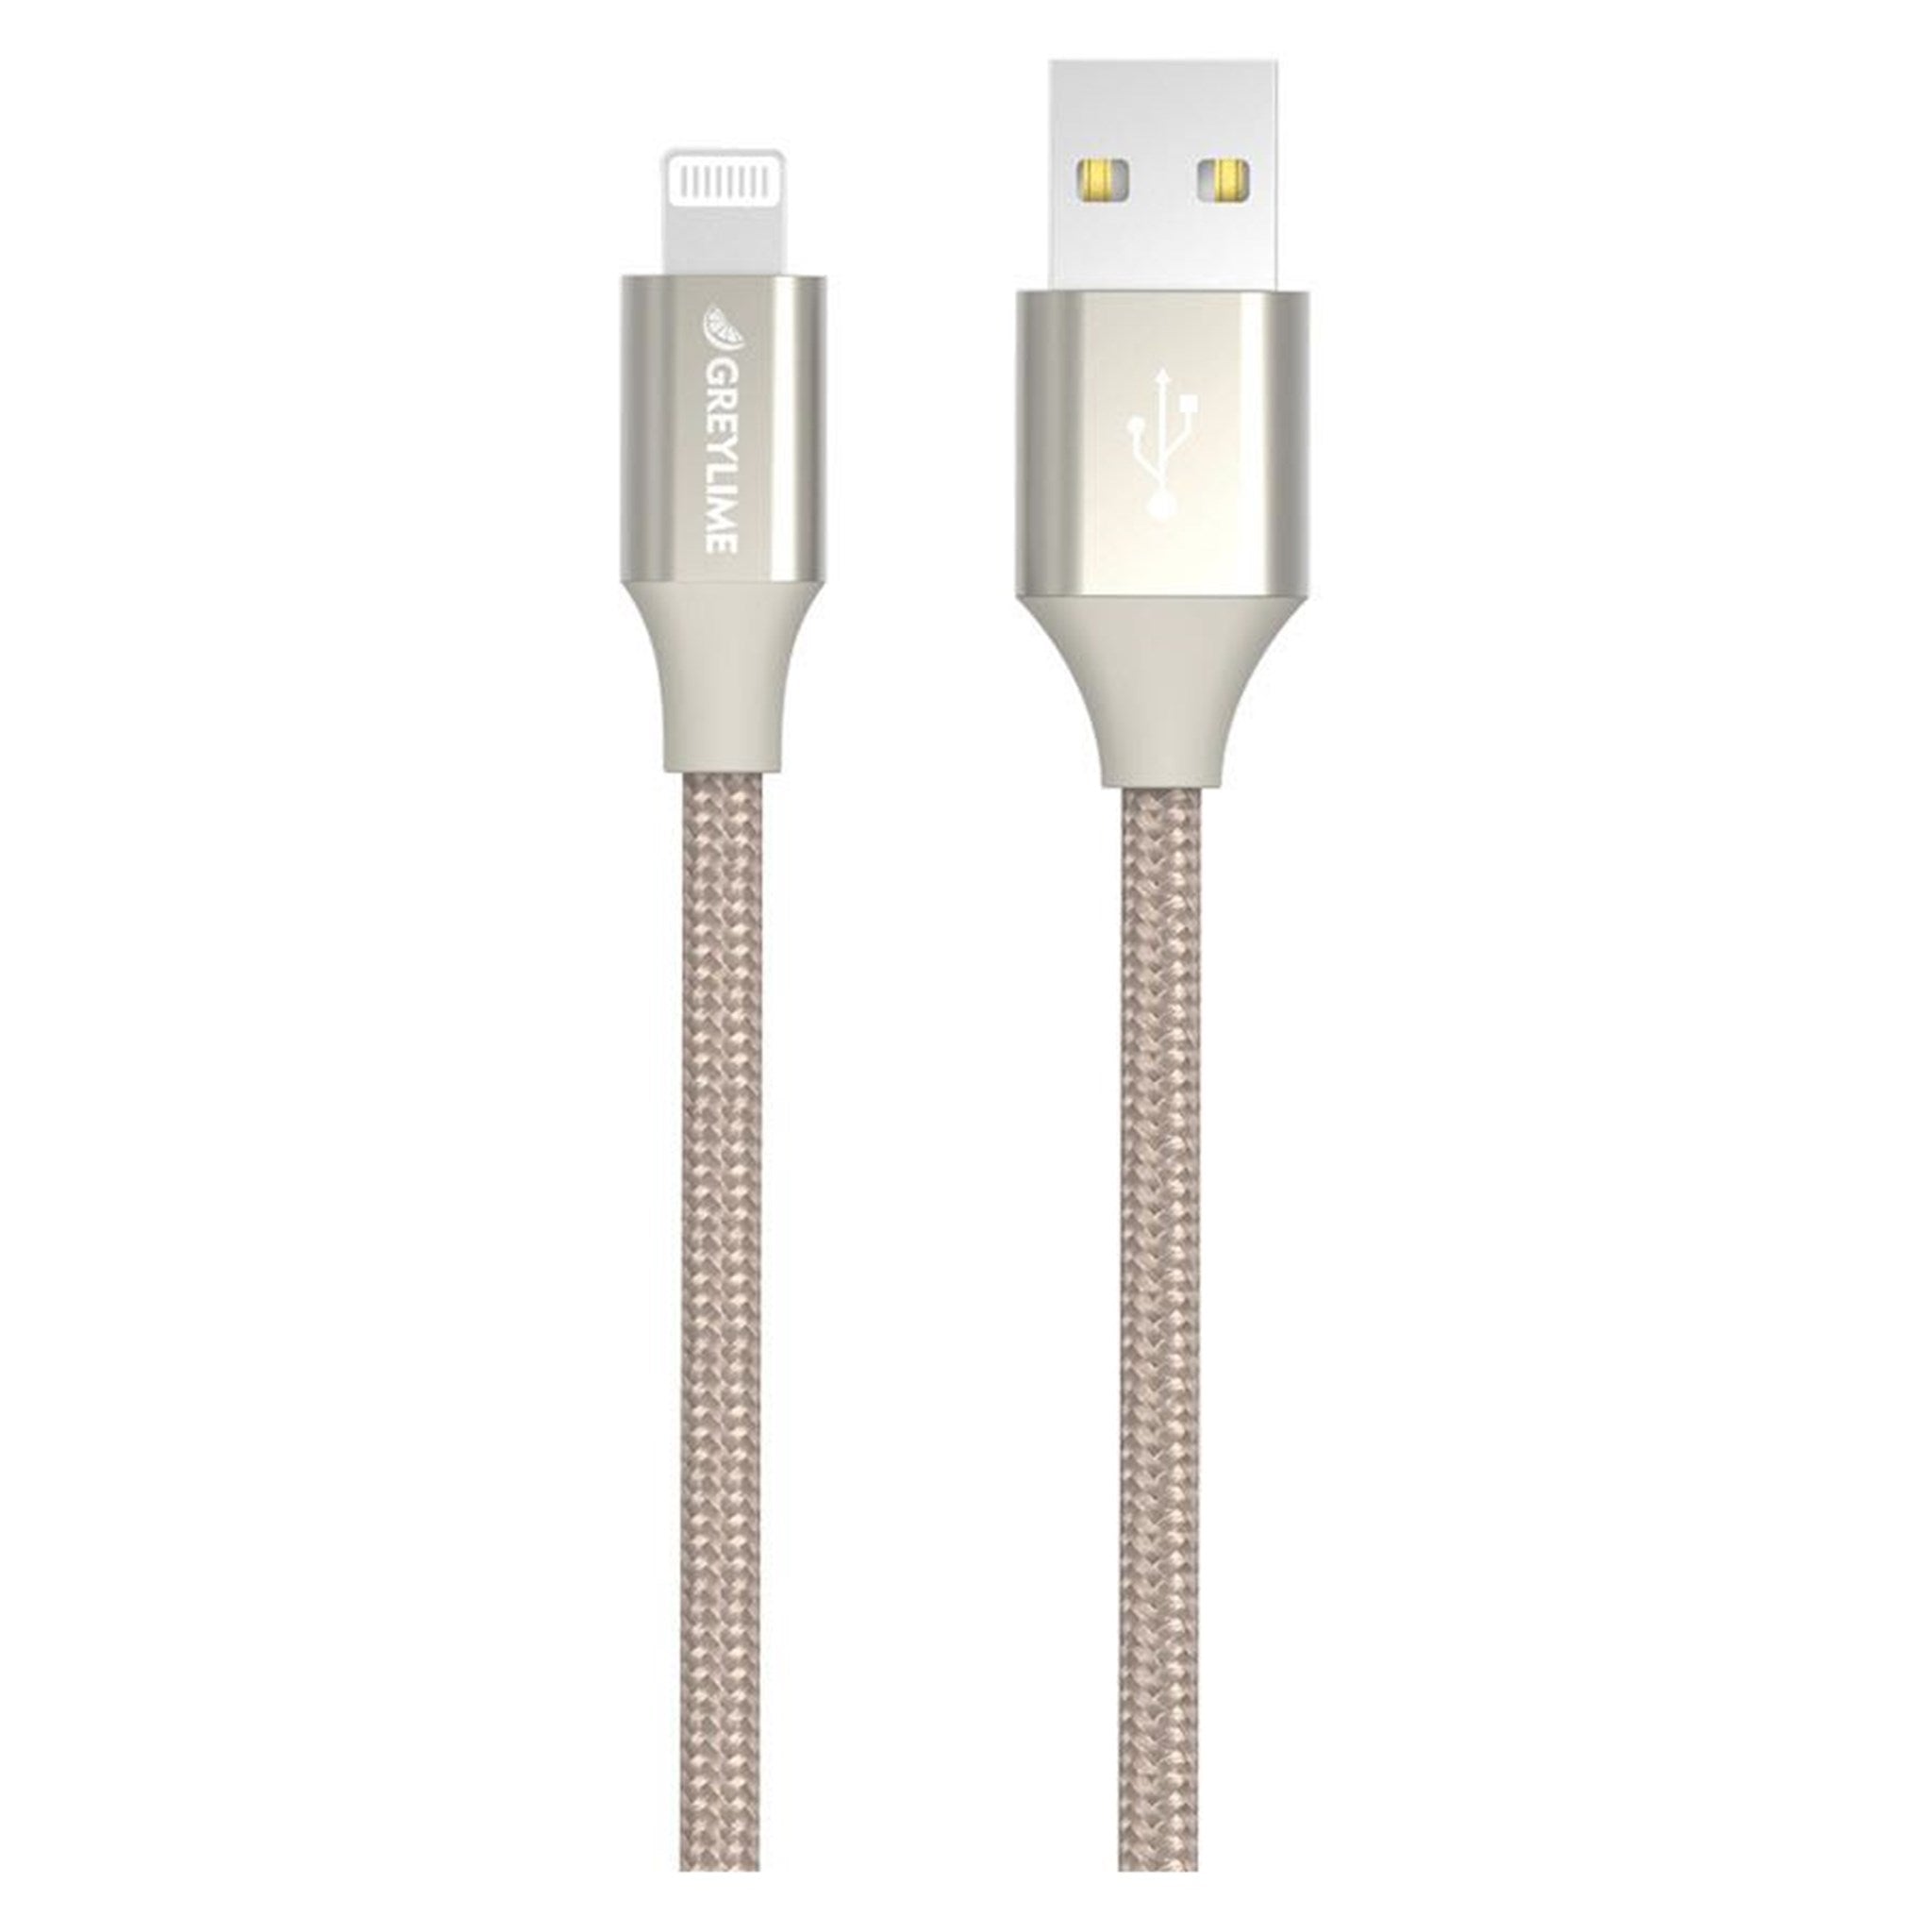 Billede af GreyLime Braided USB-A til MFi Lightning Kabel Beige 2 m hos GreyLime